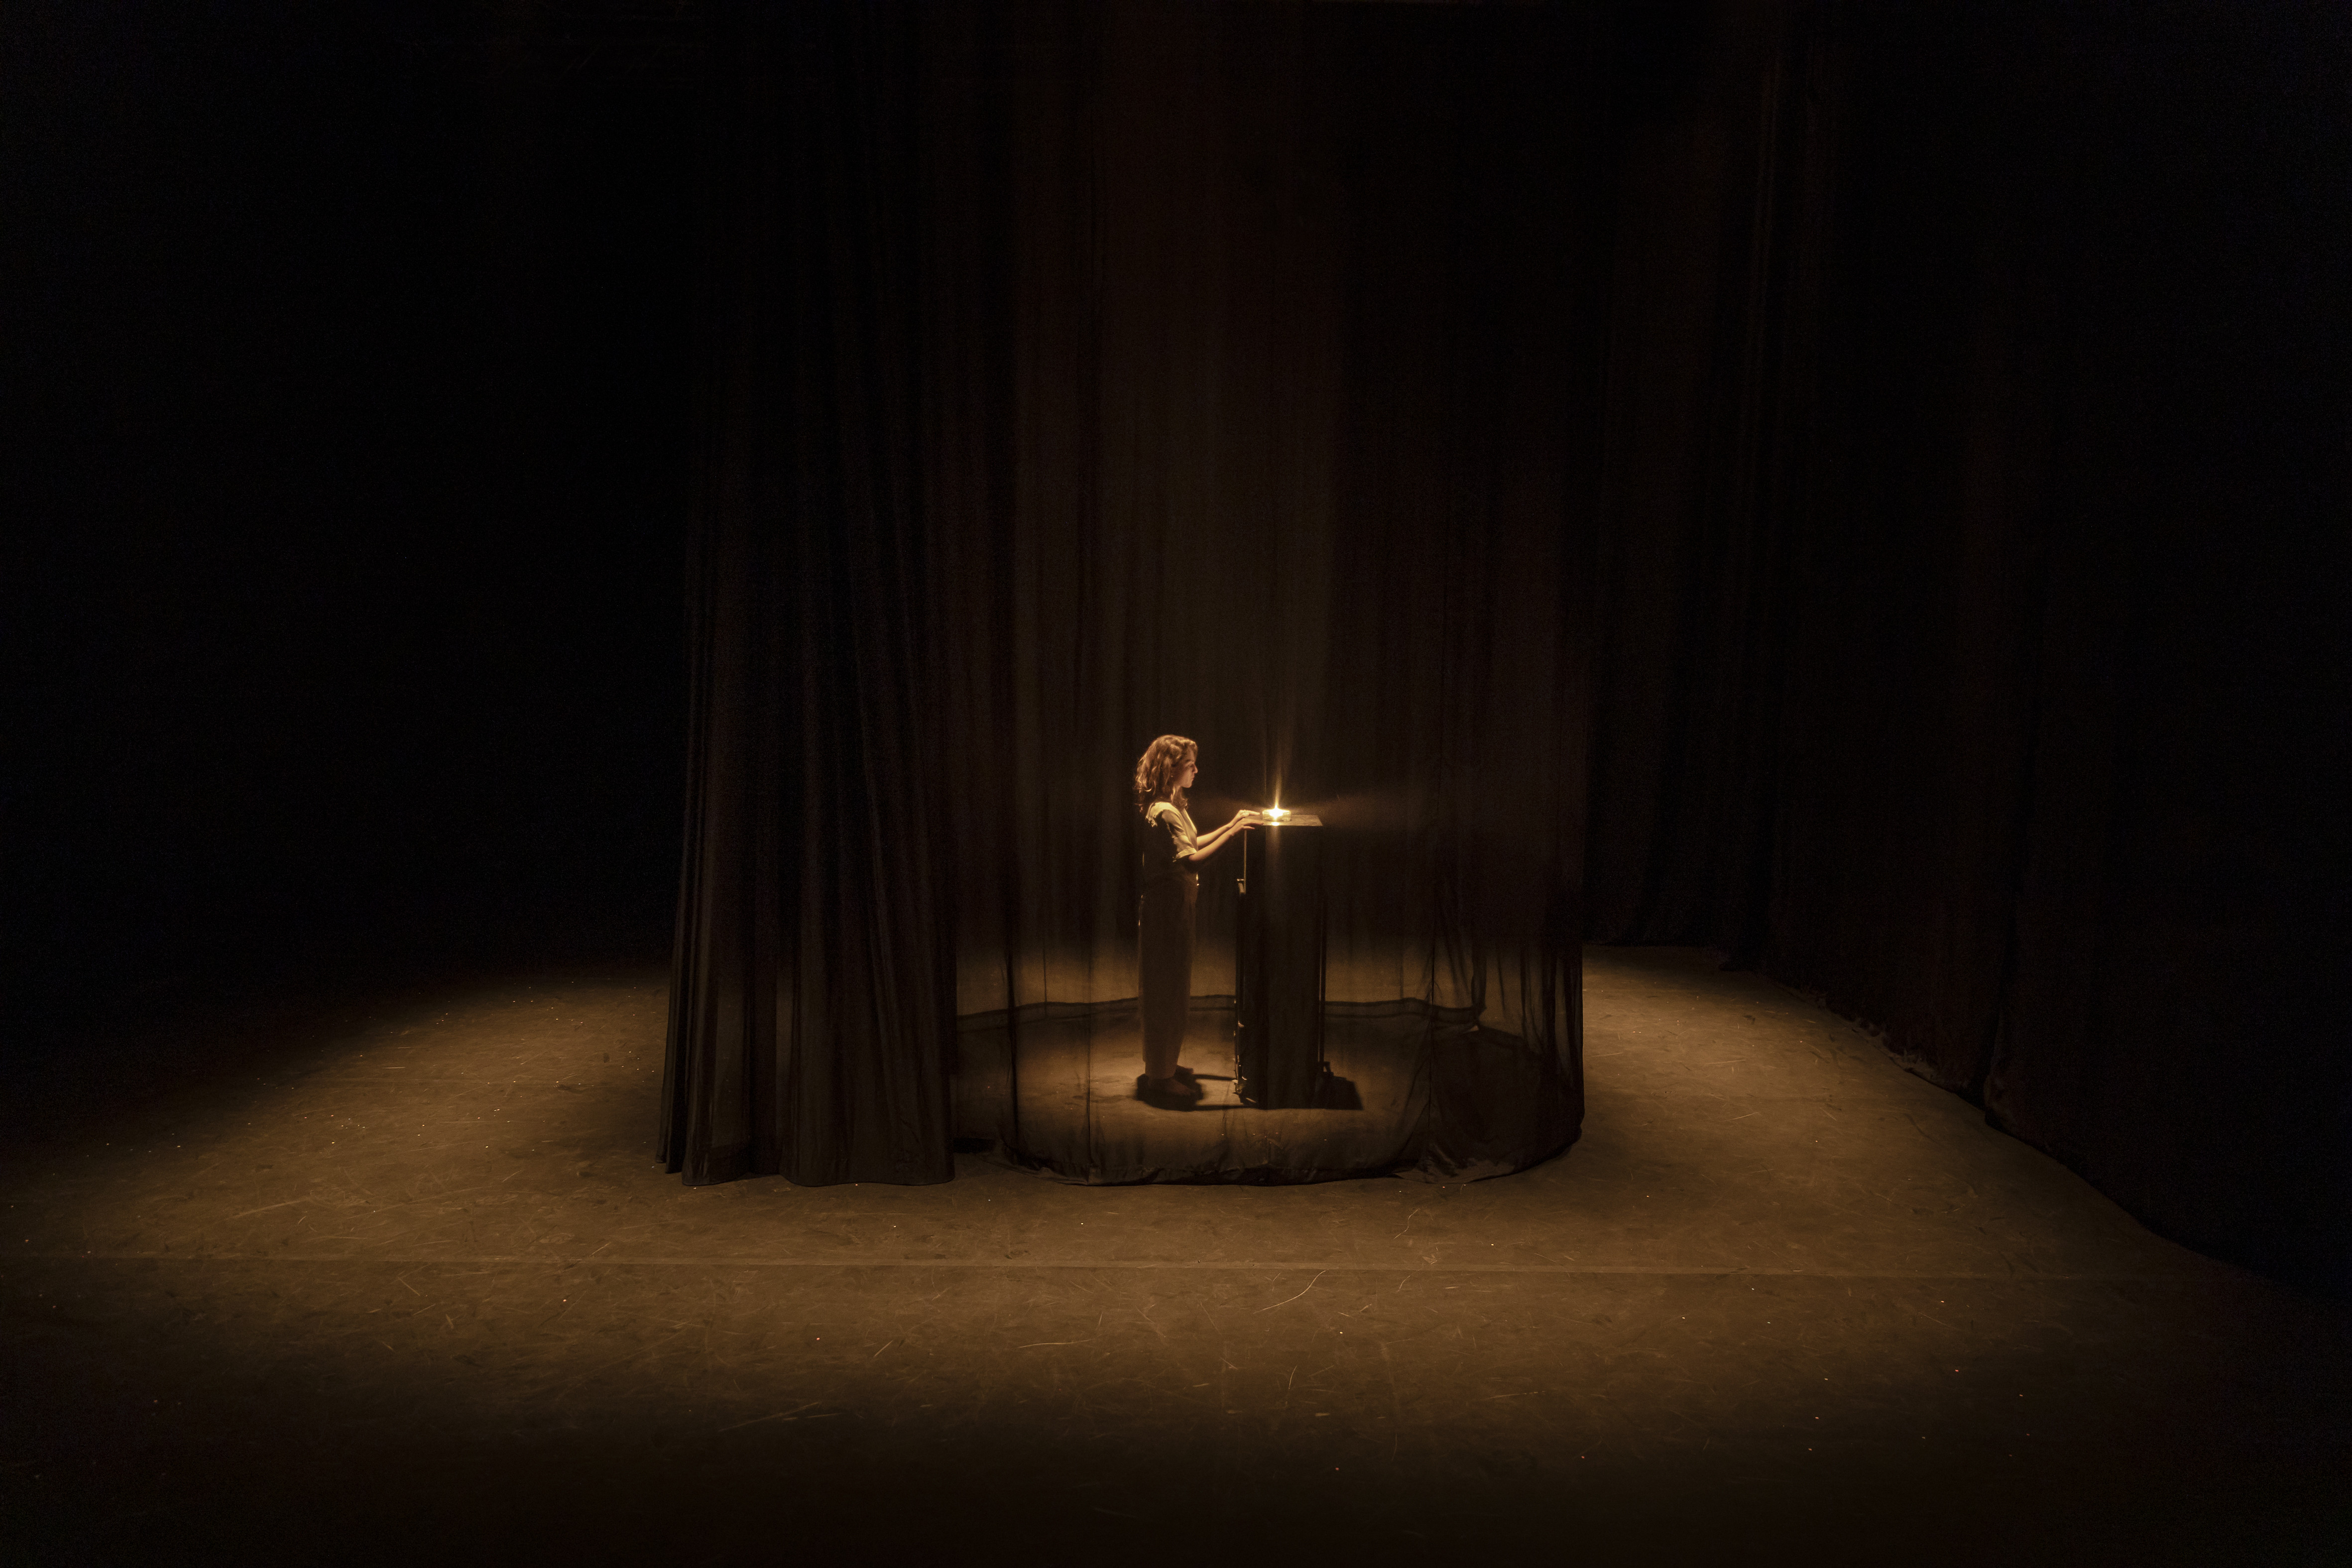 Der abgebildete Raum ist sehr dunkel und nur schwach beleuchtet. In seiner Mitte steht Charlotte De Bruyne vor einem hohen Tisch mit einem kleinen Licht darauf. Charlotte De Bruyne ist umgeben von einem transparenten schwarzen Vorhang.